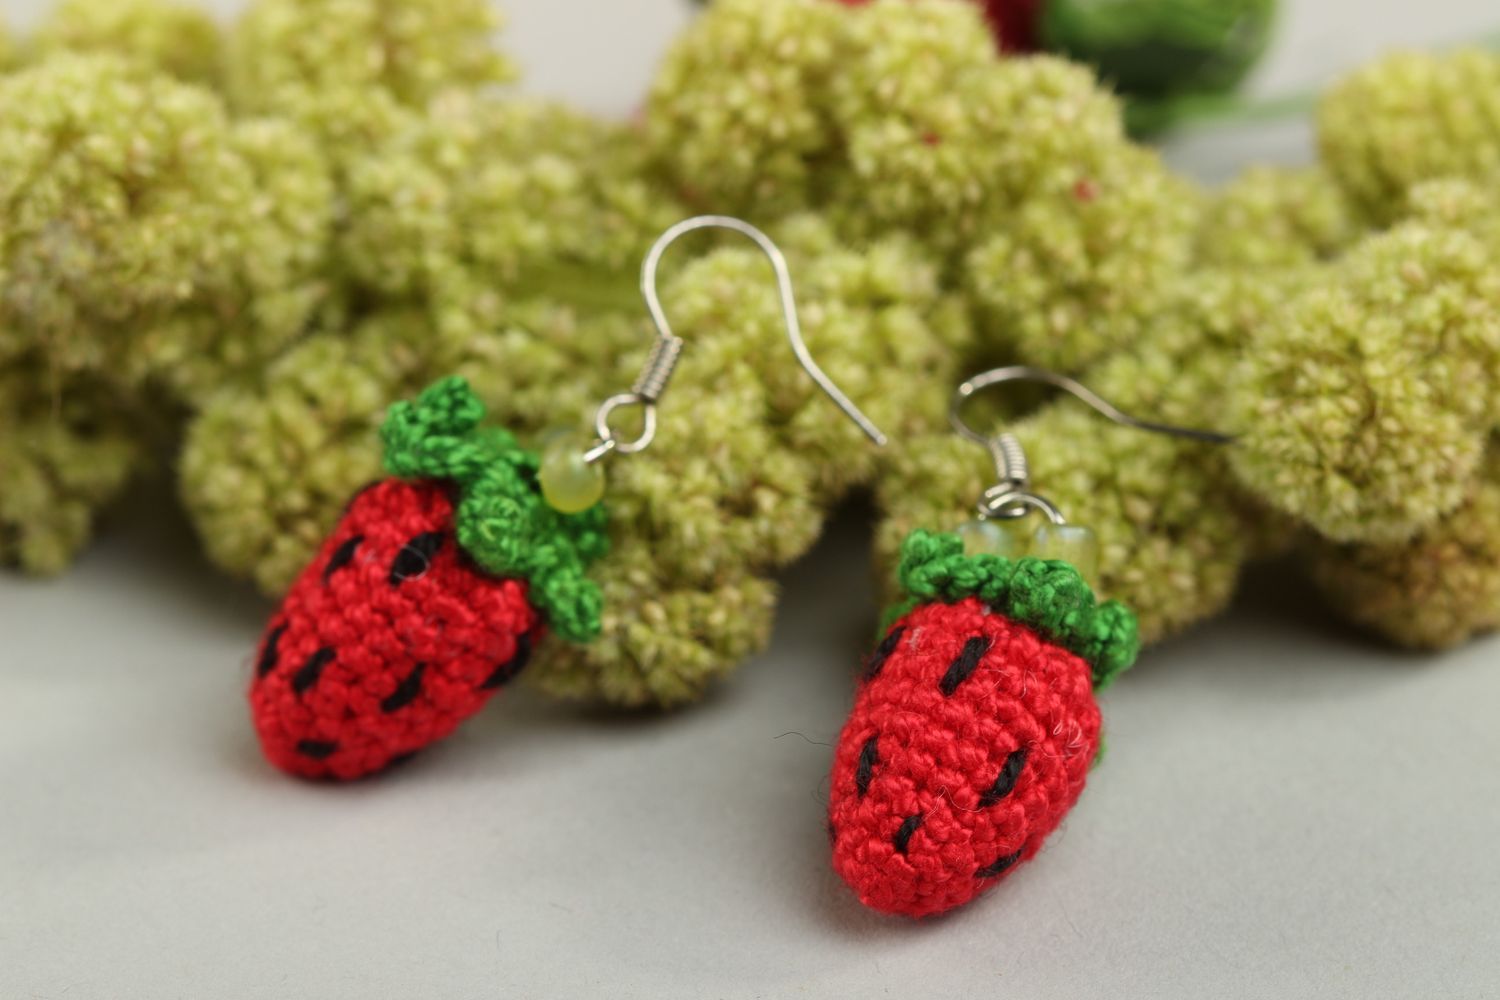 Handmade earrings designer jewelry gift ideas unusual earrings crochet accessory photo 1